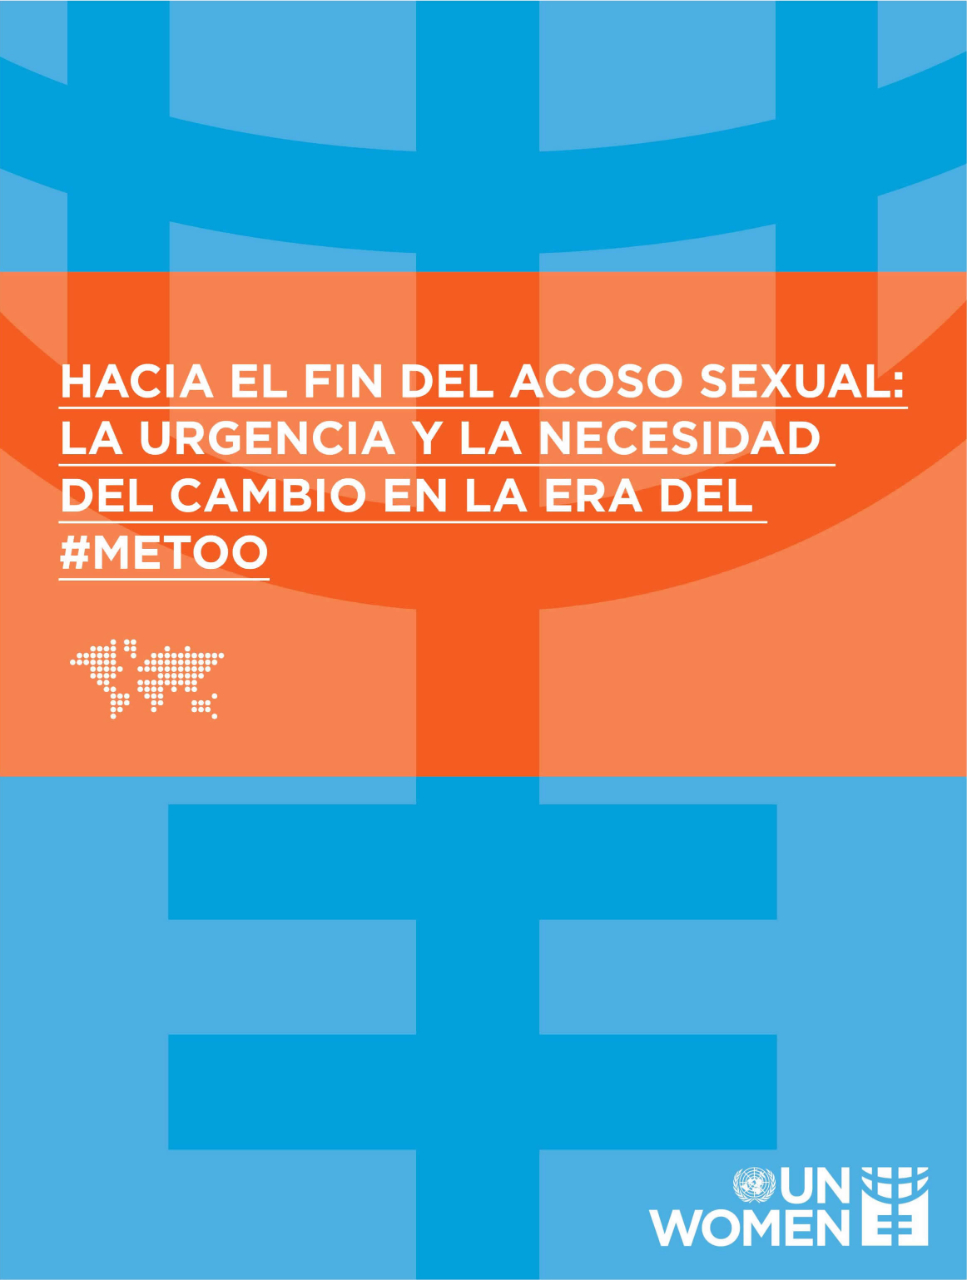 Hacia el fin del acoso sexual: La urgencia y necesidad del cambio en la era del #MeToo